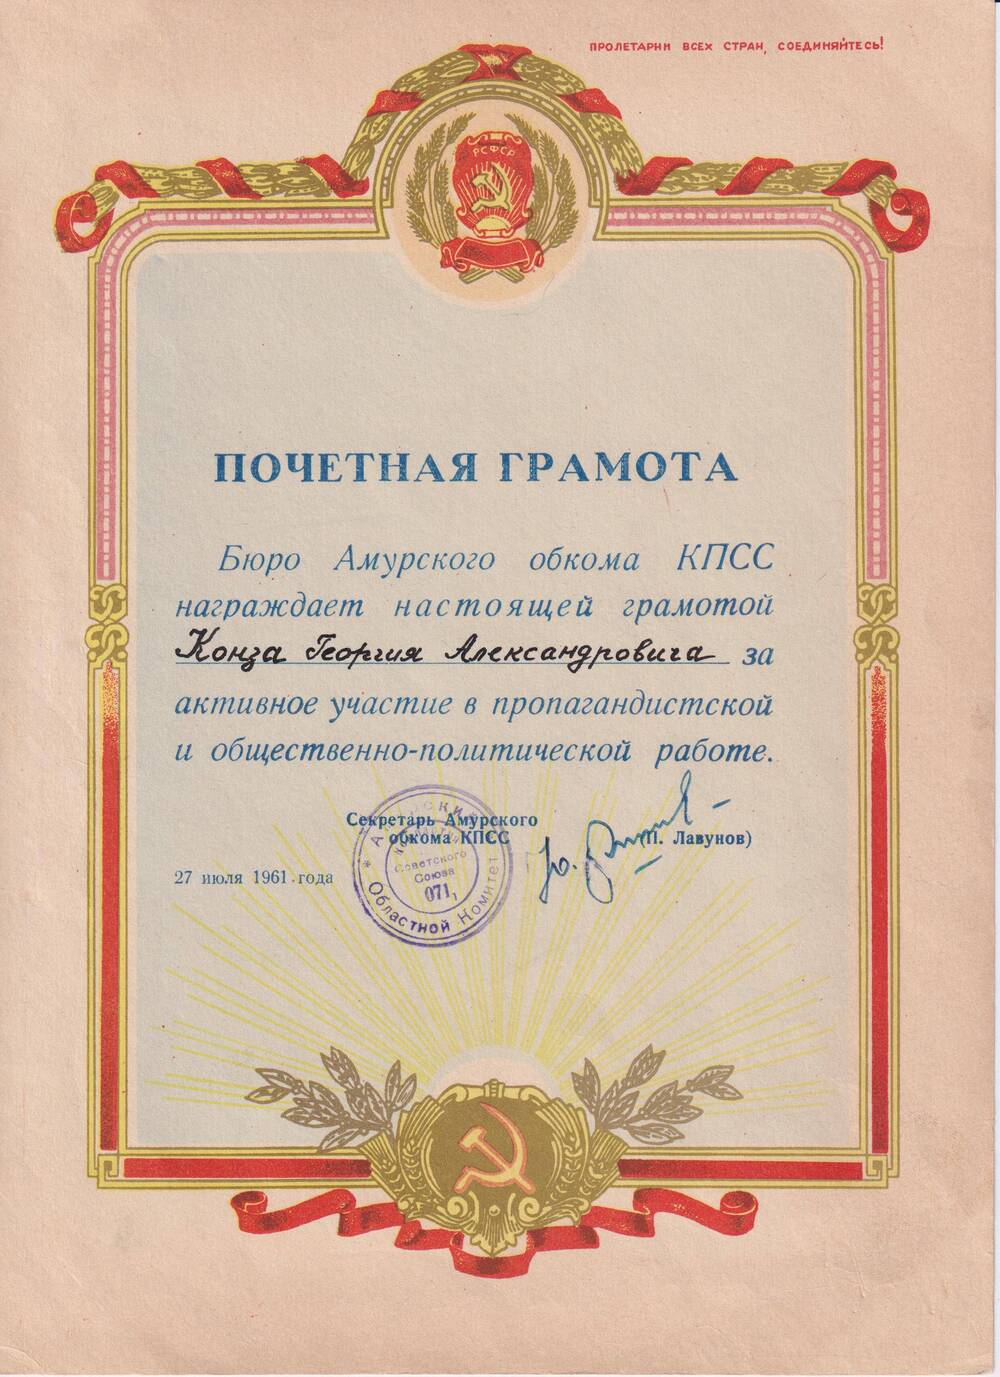 Почетная грамота Конза Георгию Александровичу  за активное участие  в пропагандистской  и общественно-политической работе от Амурского  обкома КПСС.